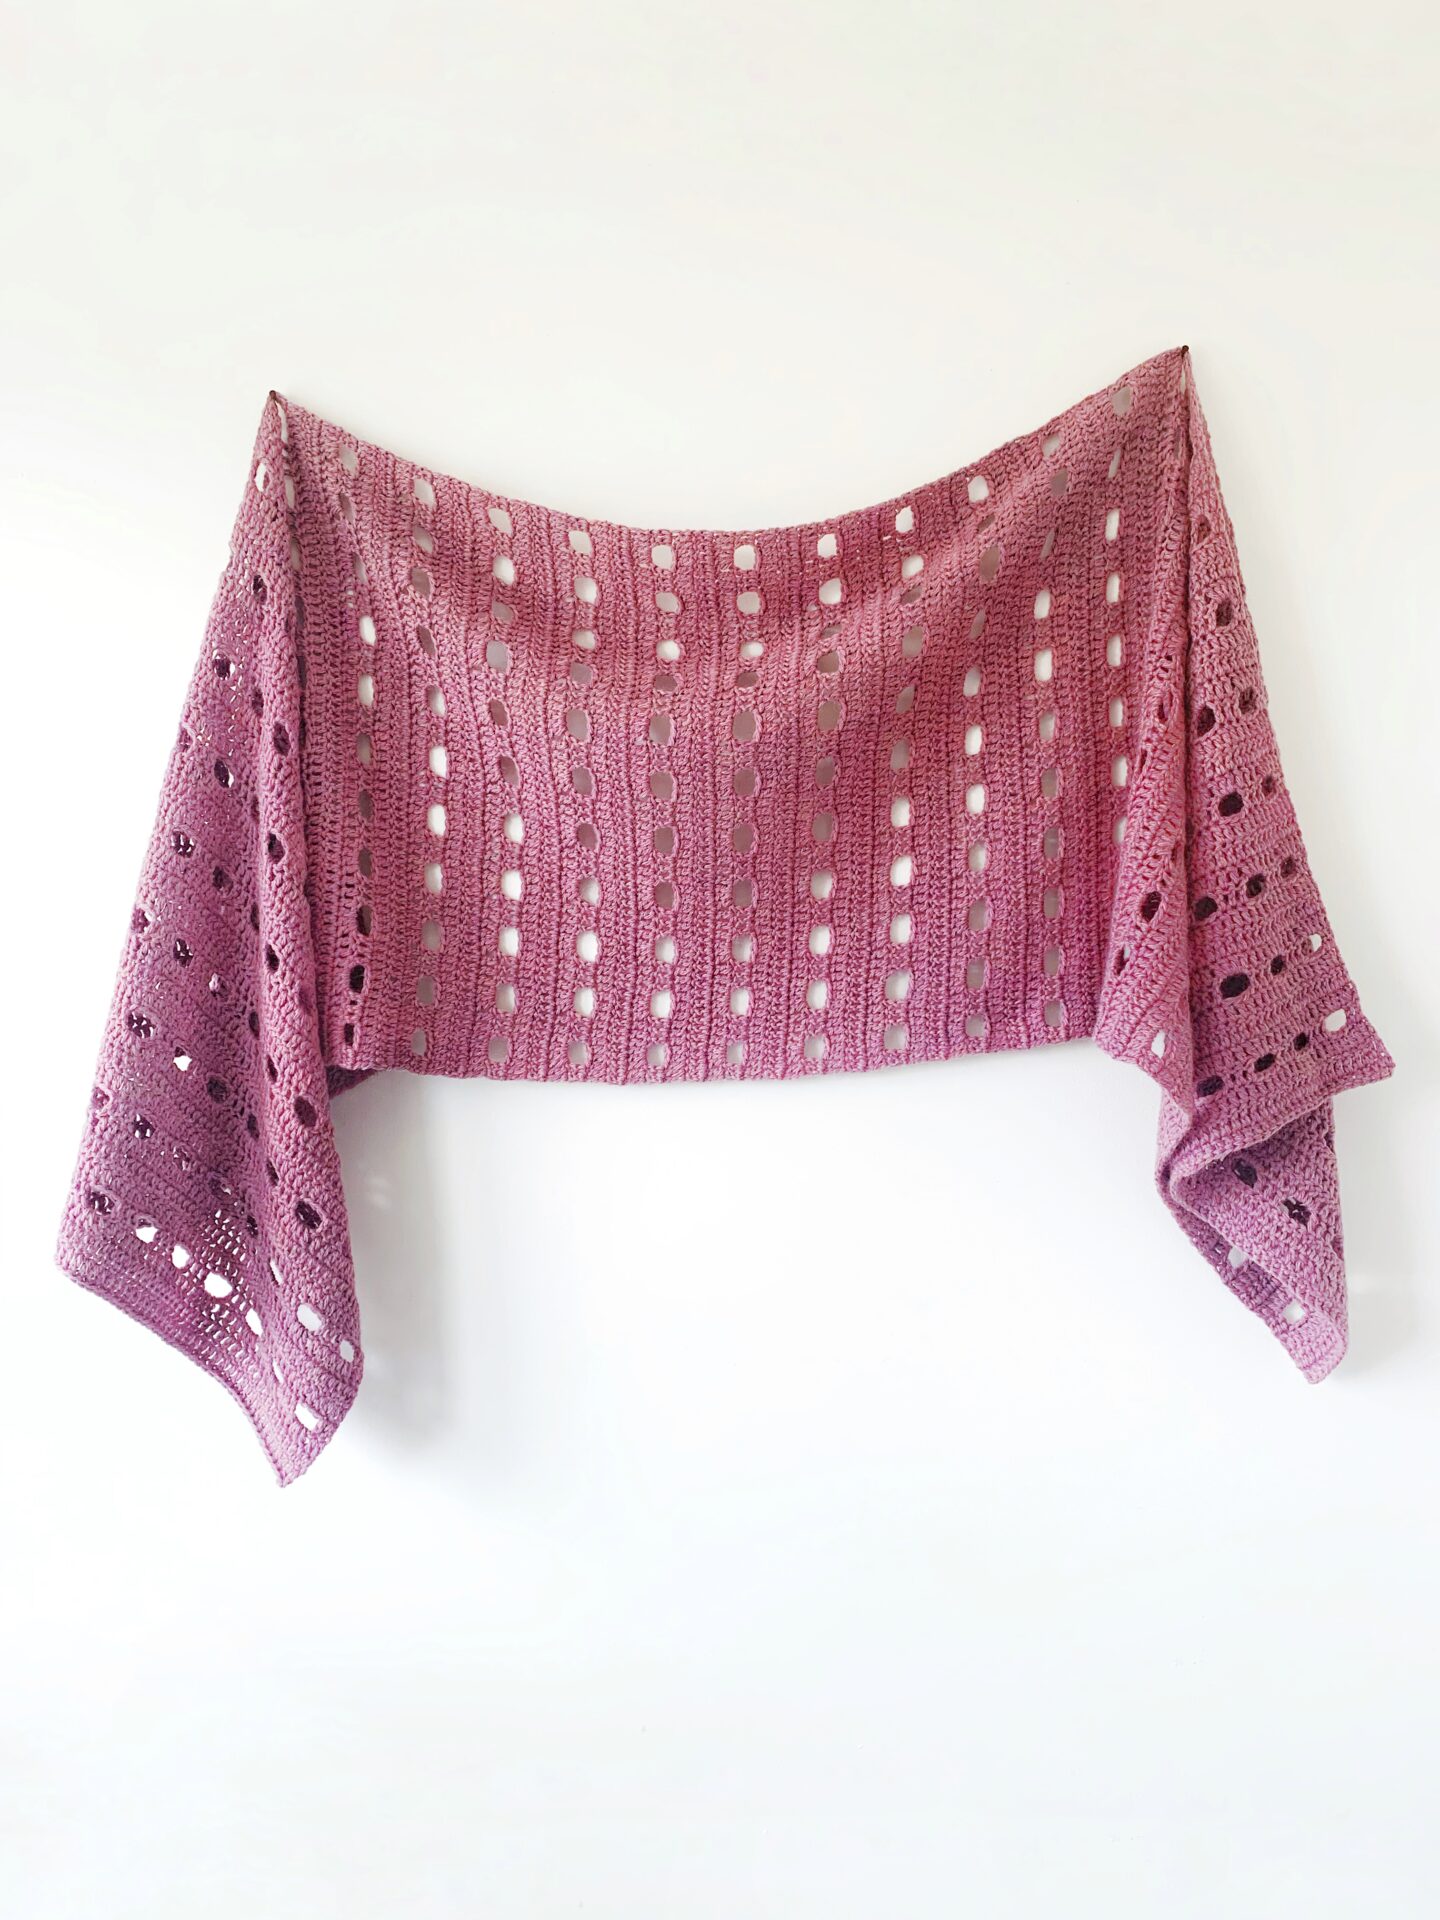 Free Crochet pattern - Hew Sideways Shawl